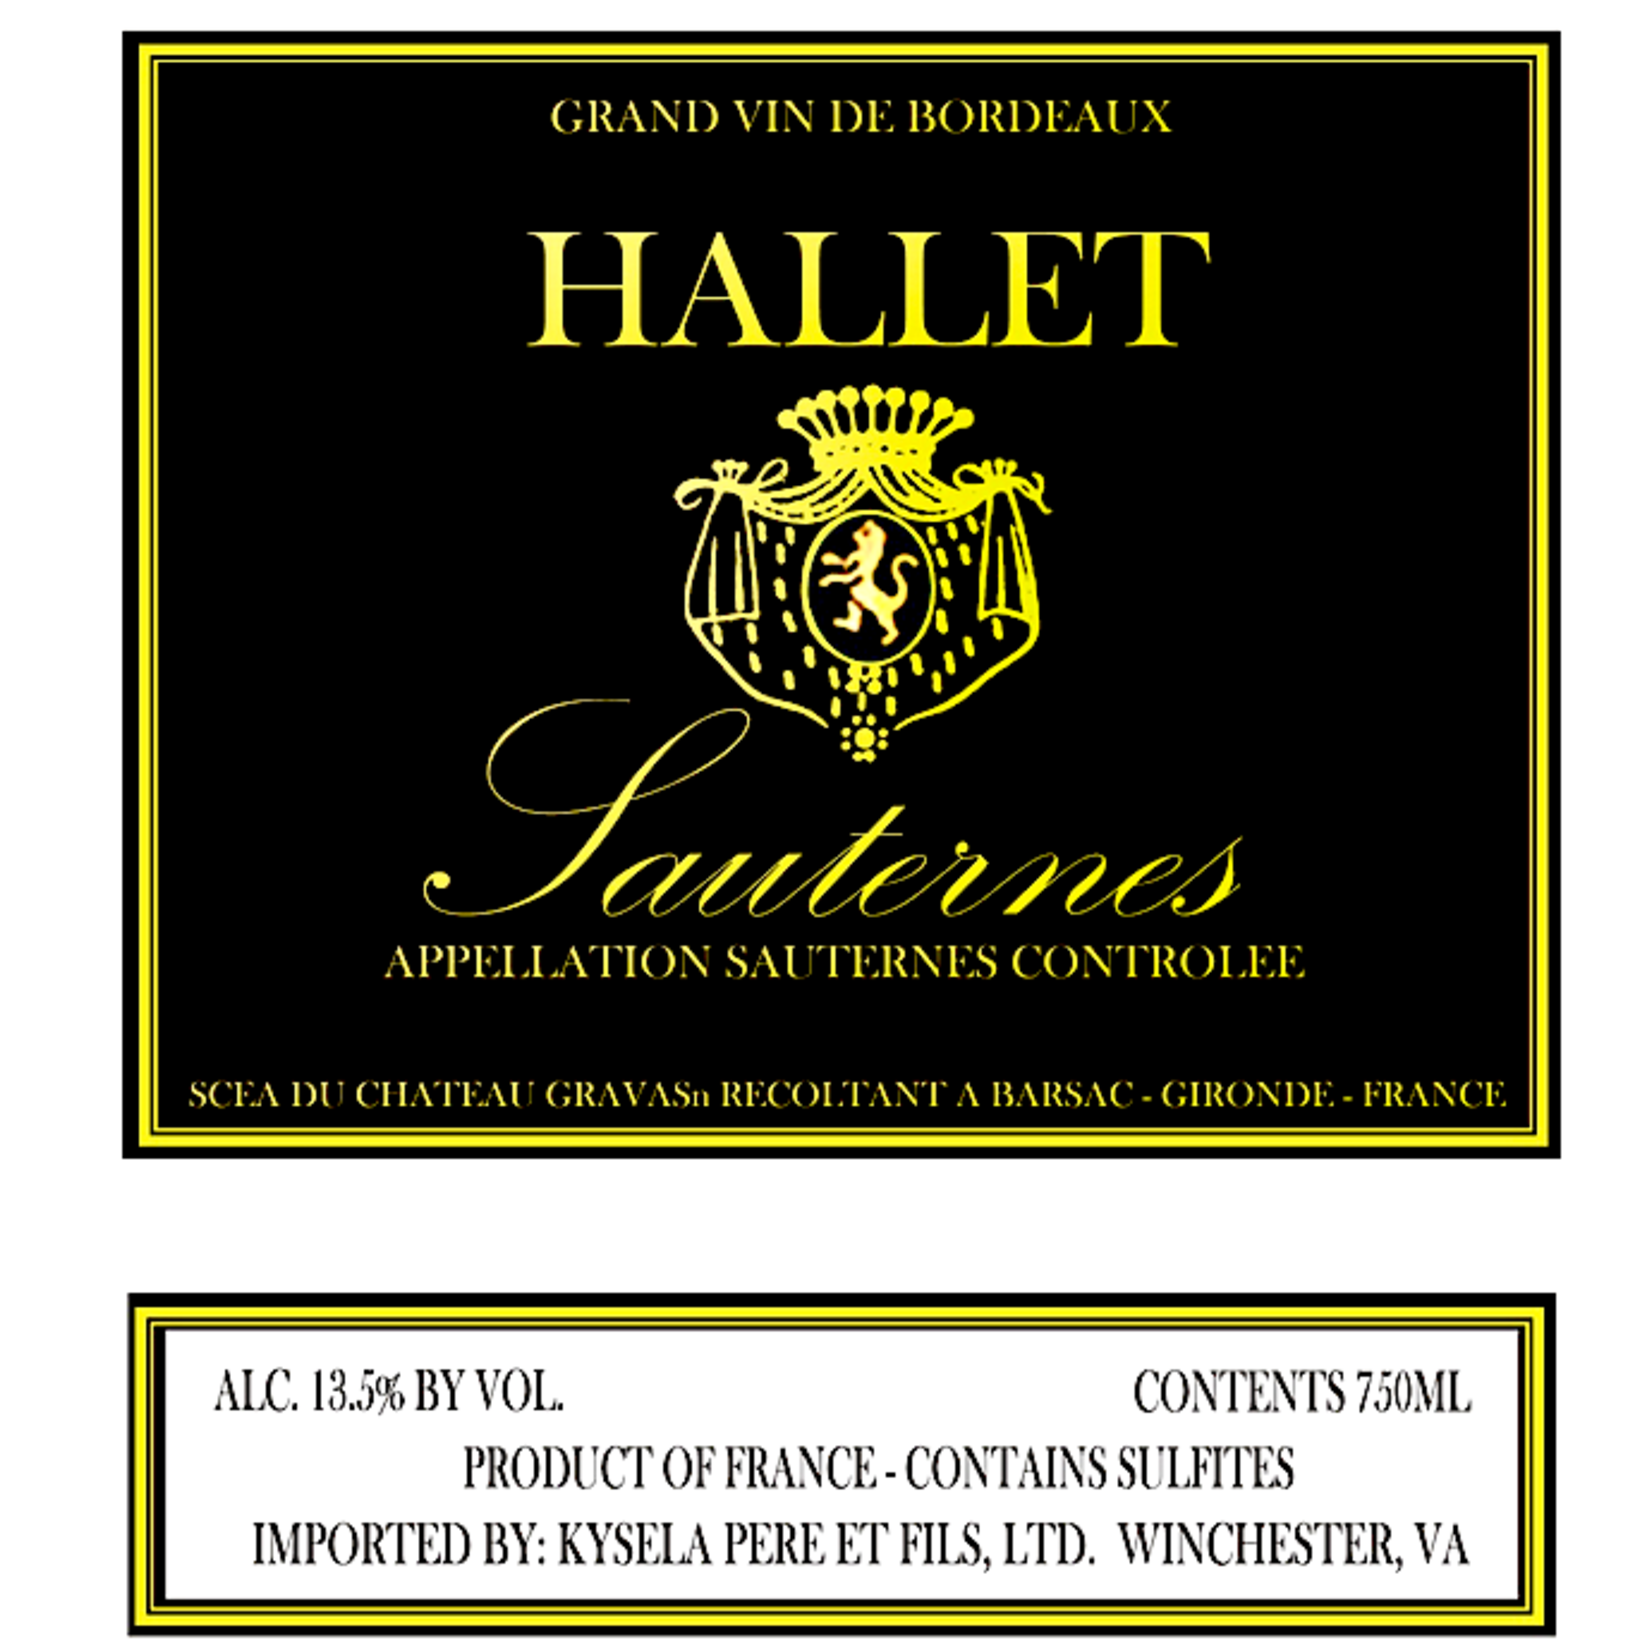 Chateau Hallet Ch Hallet Sauternes 2018  375ml  Bordeaux, France